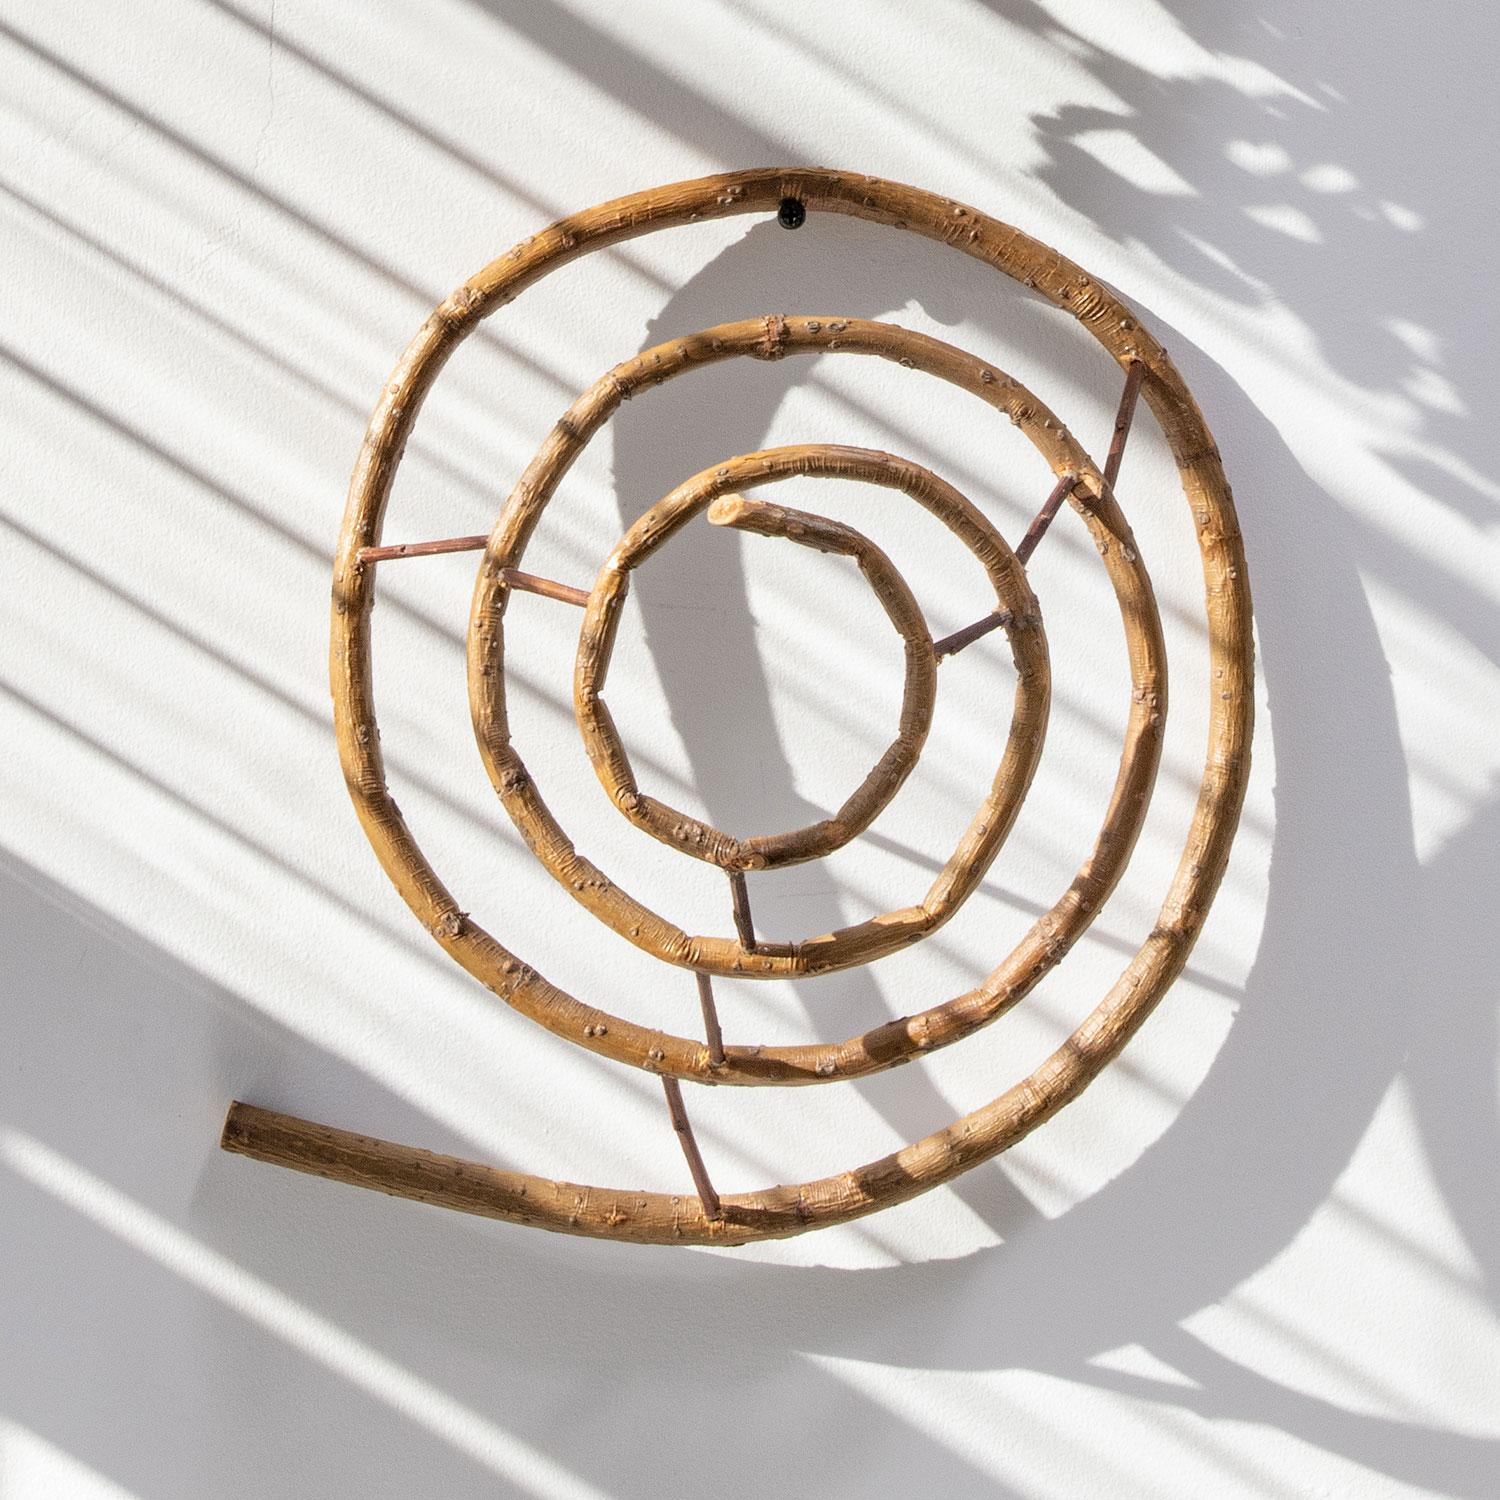 copper spiral sculpture